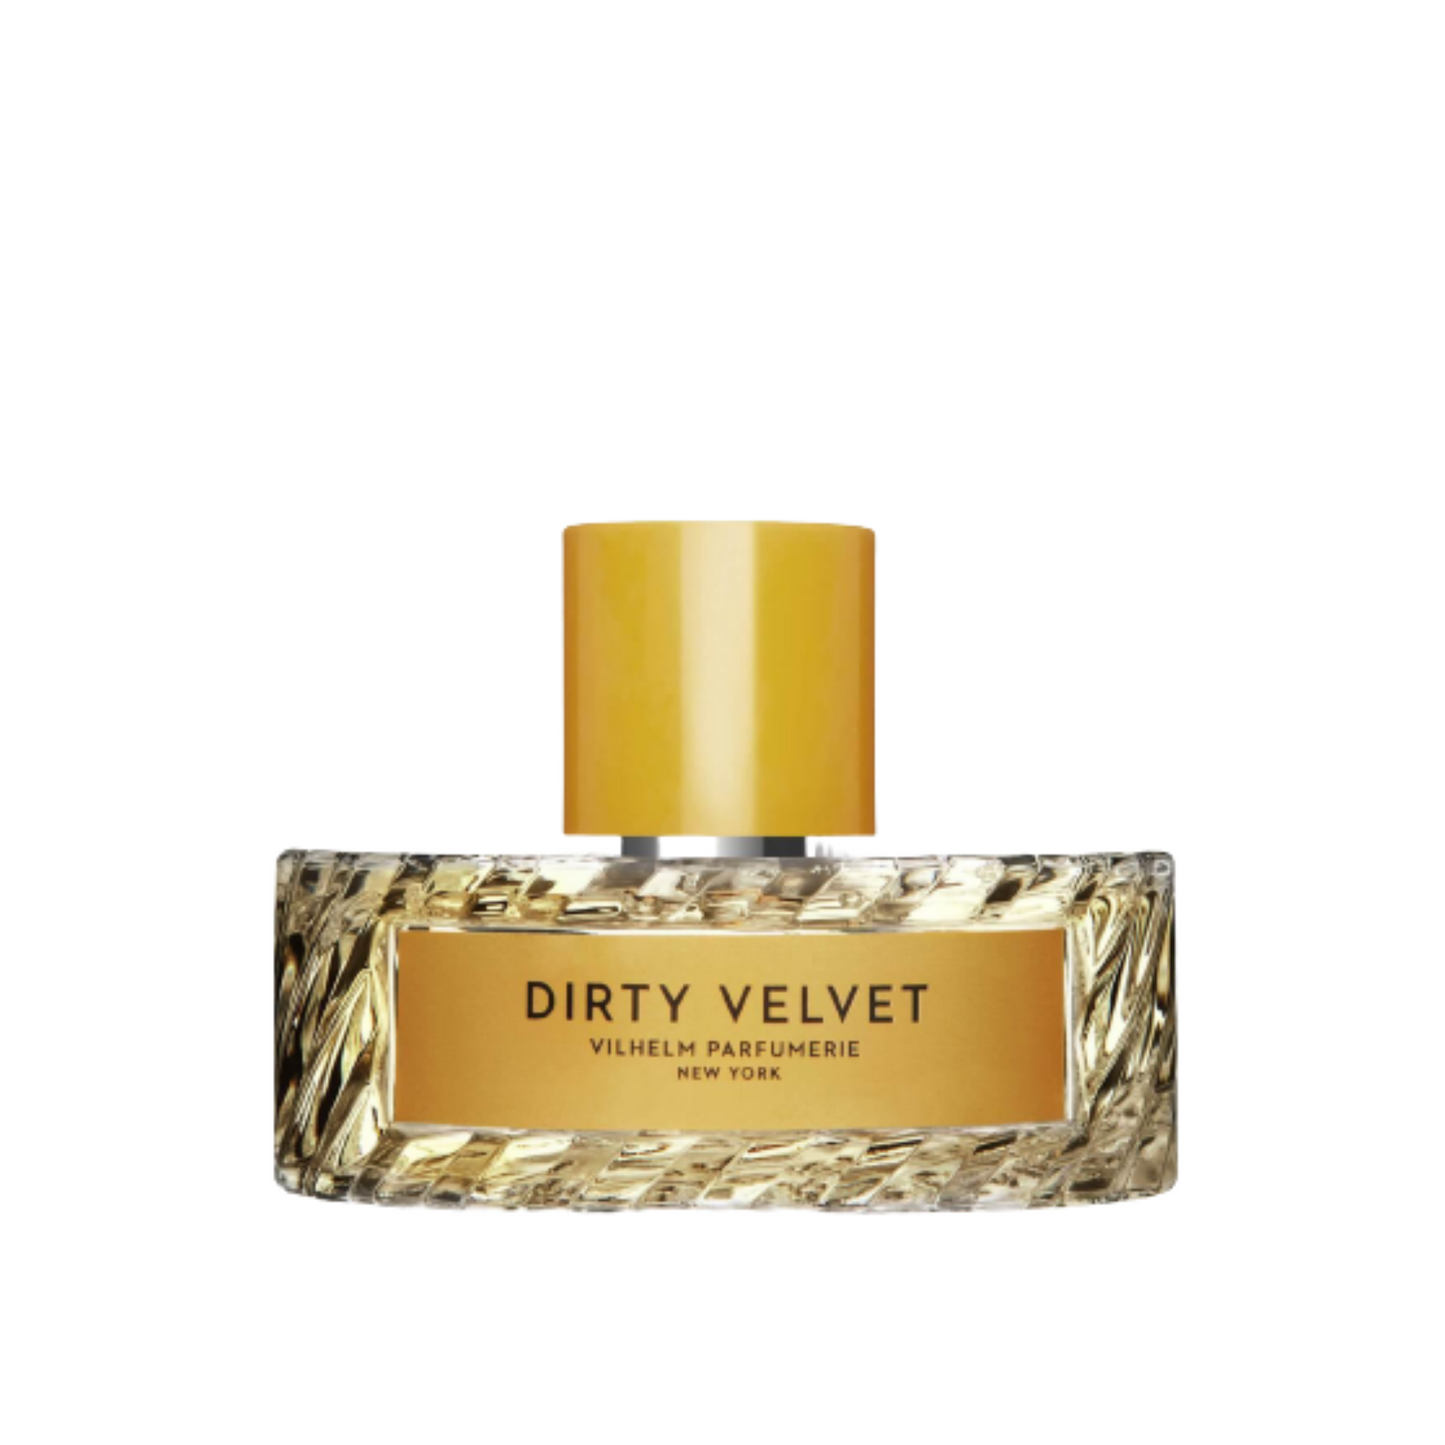 Primary Image of Parfumerie Dirty Velvet EDP